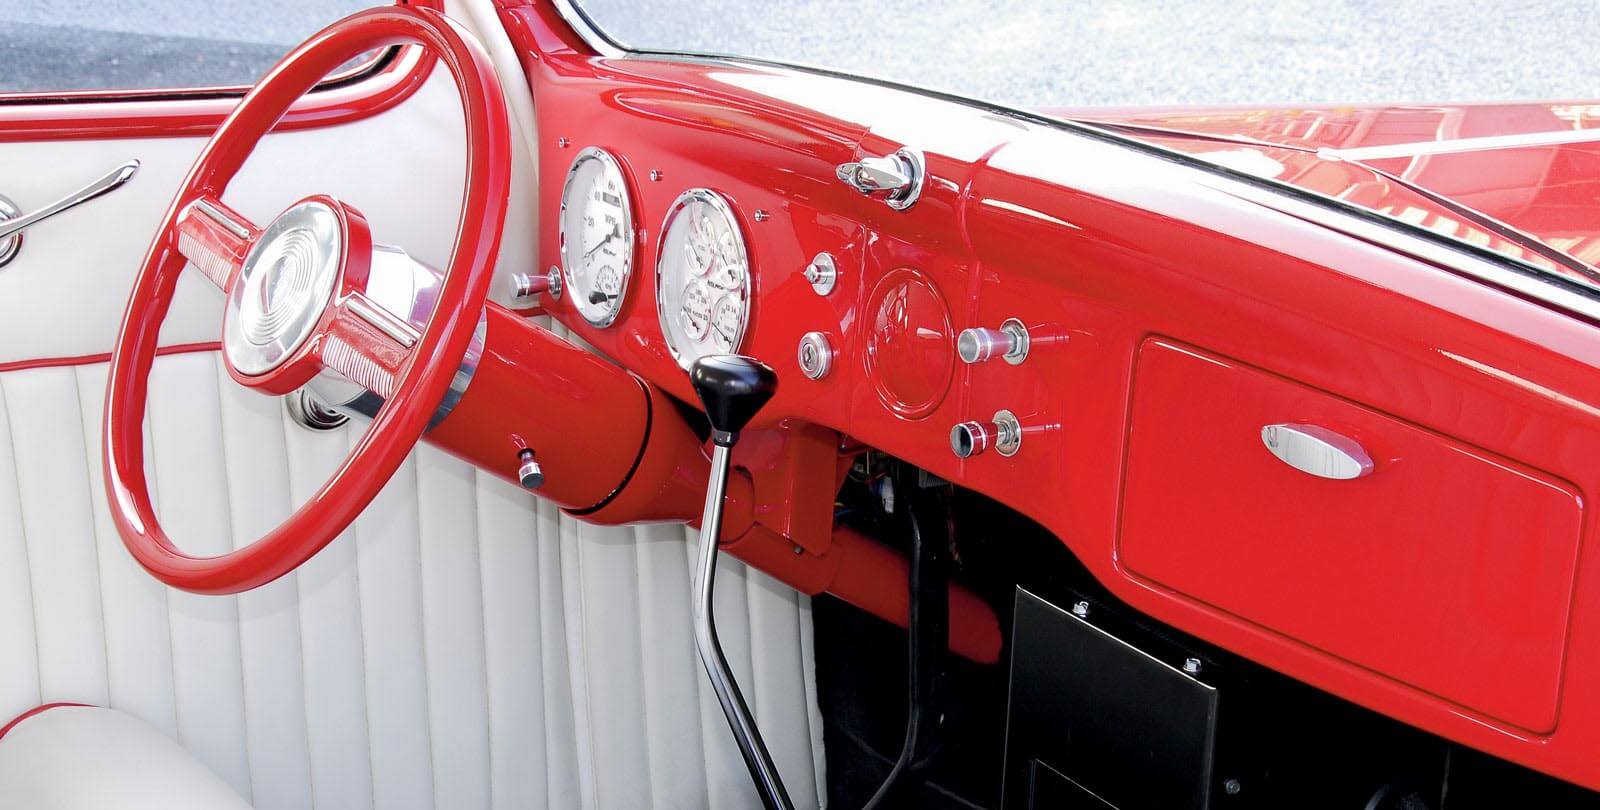 Plymouth Voyager dash kit